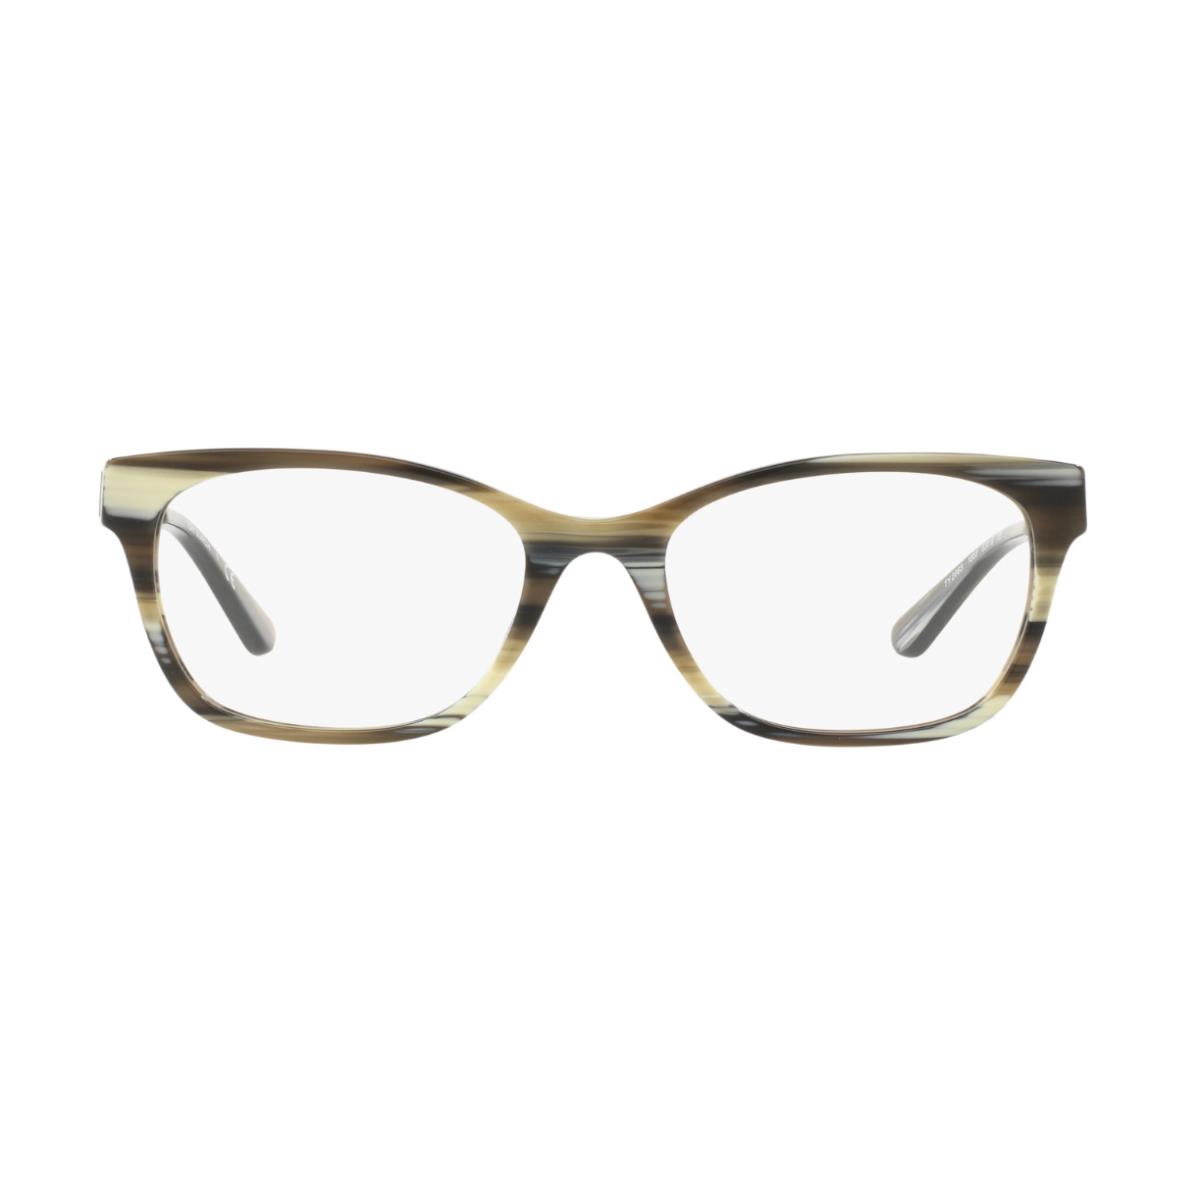 Tory Burch Eyeglasses TY 2063-1553 Olive Horn W/demo Lens 53mm - Frame: Olive Horn / Vintage Gold